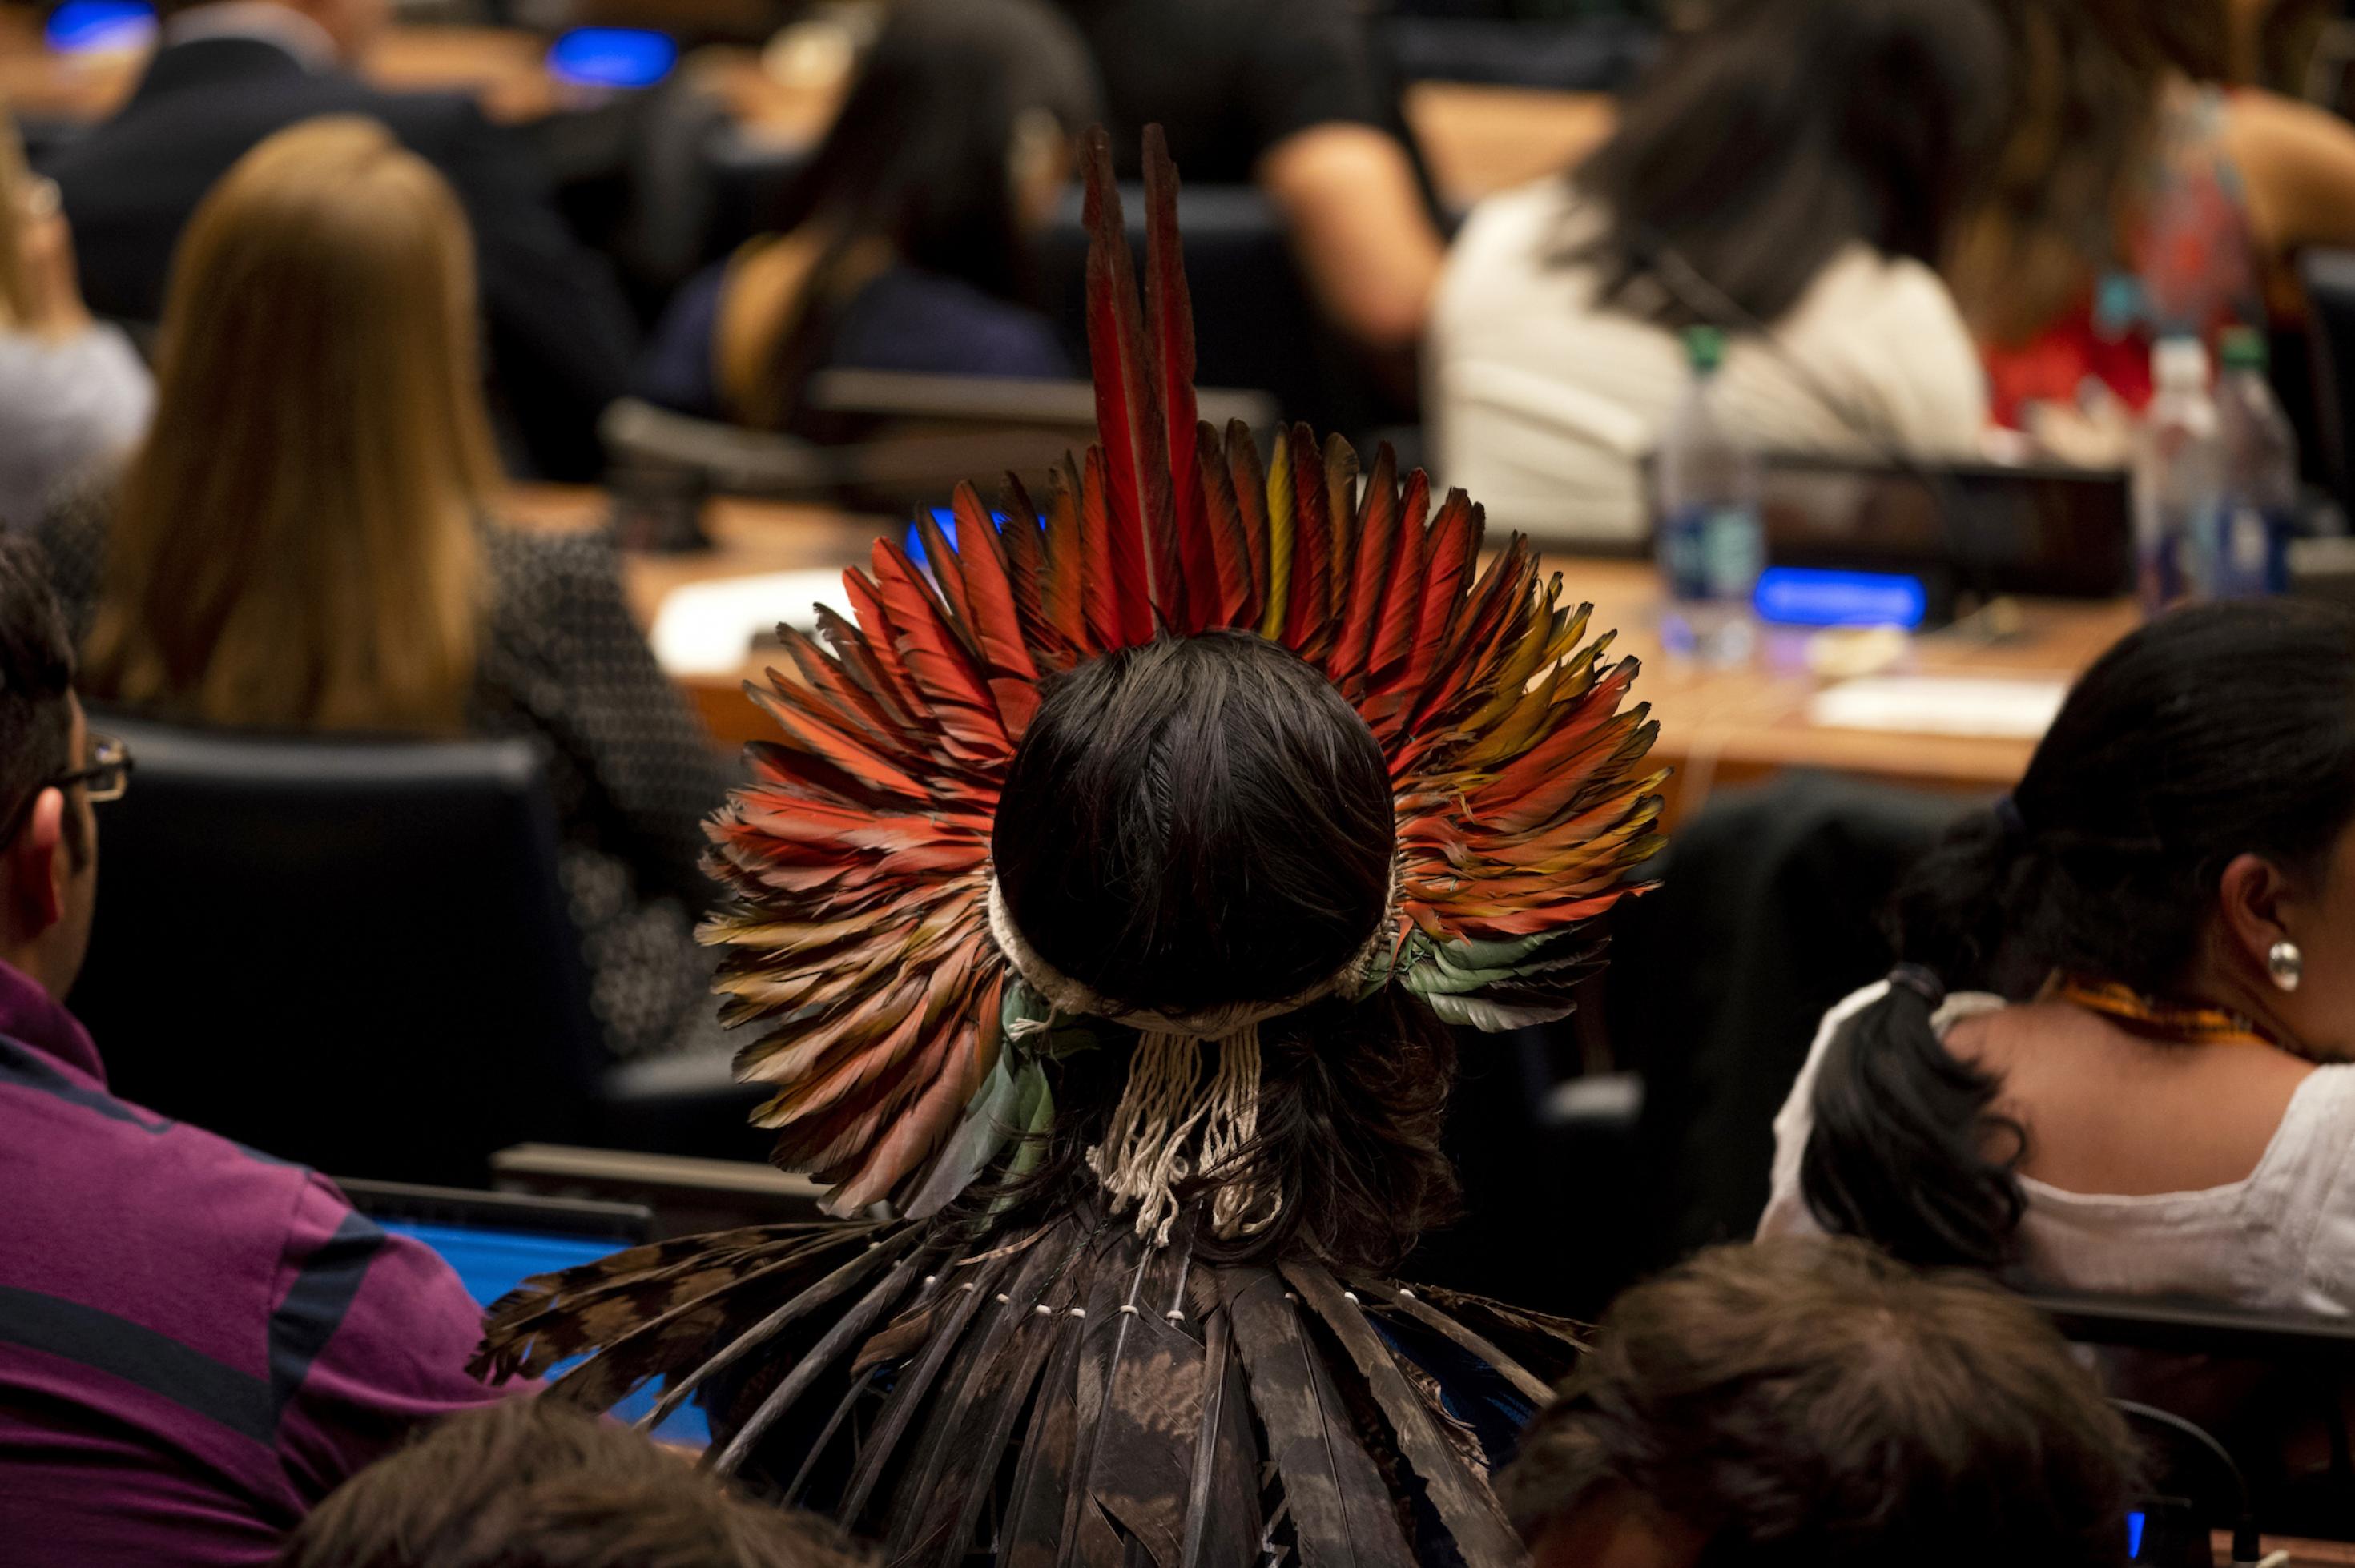 Das Foto zeigt einen Mann mit wunderschönem Federschmuck, der in einem Konferenzsaal der Vereinten Nationen sitzt, von hinten.